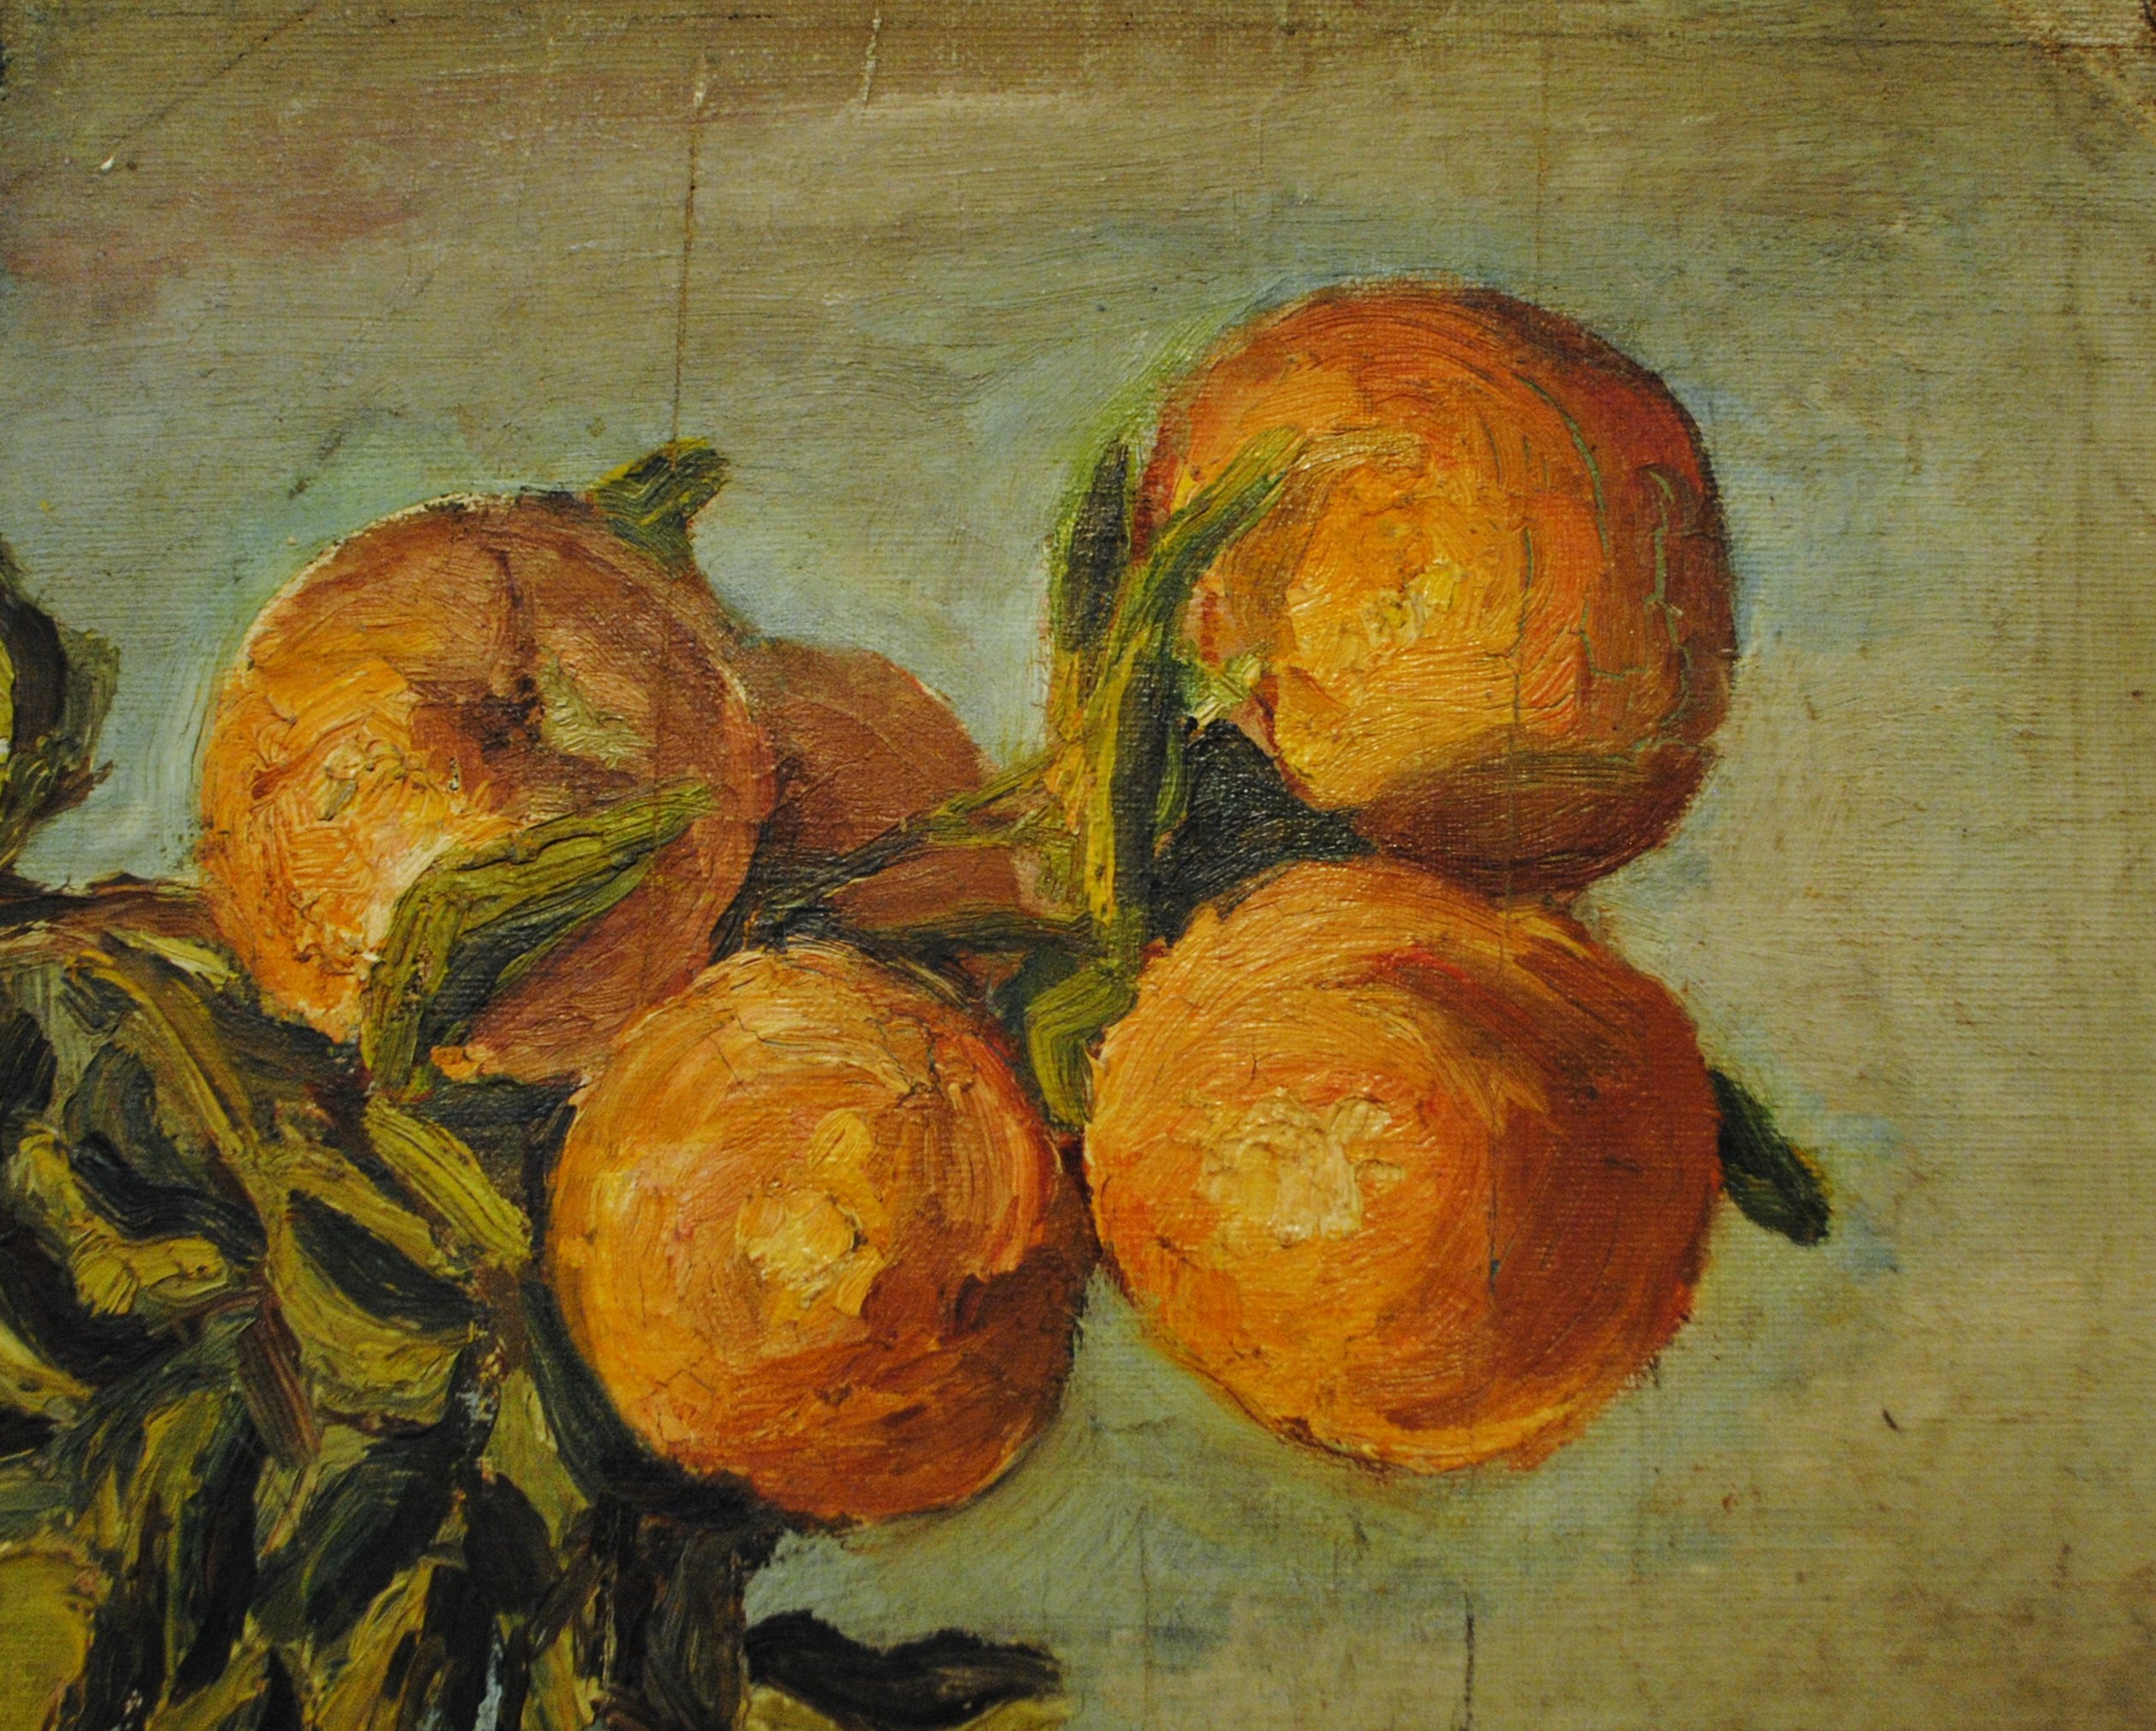 Pintura de José Manaut titulada Cuatro frutas. Óleo sobre lienzo.